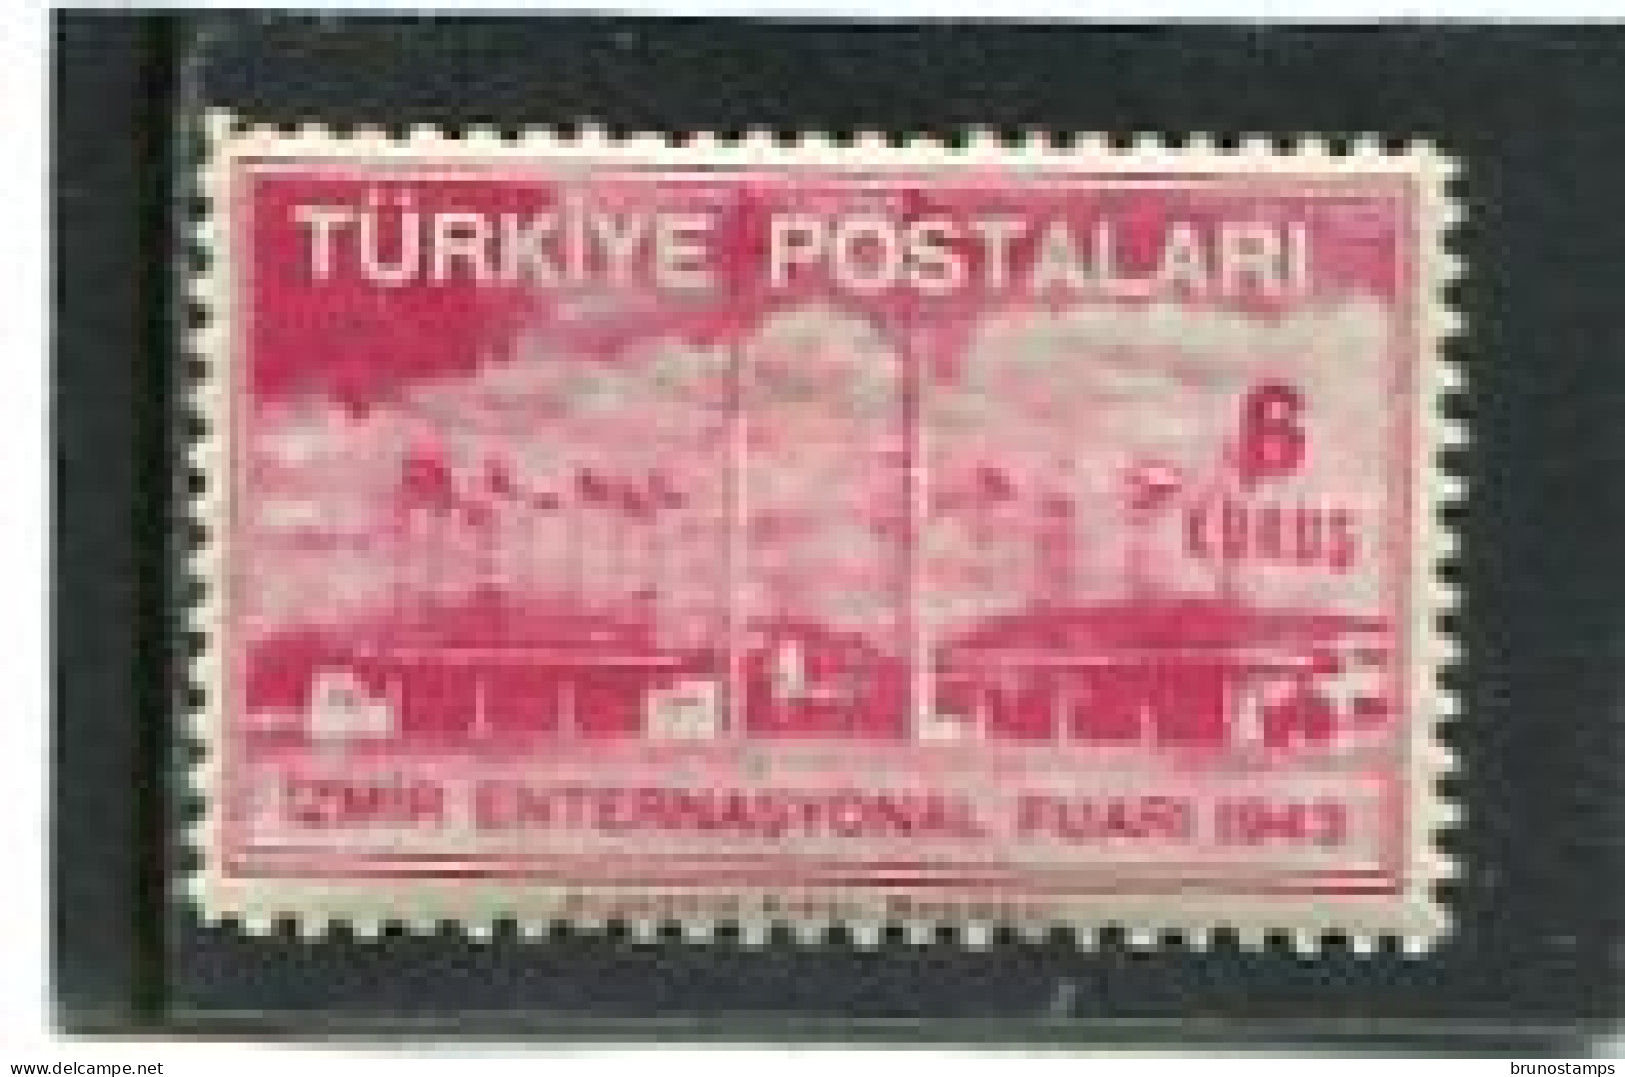 TURKEY/TURKIYE - 1943   6k  EXPO  MINT NH - Ungebraucht